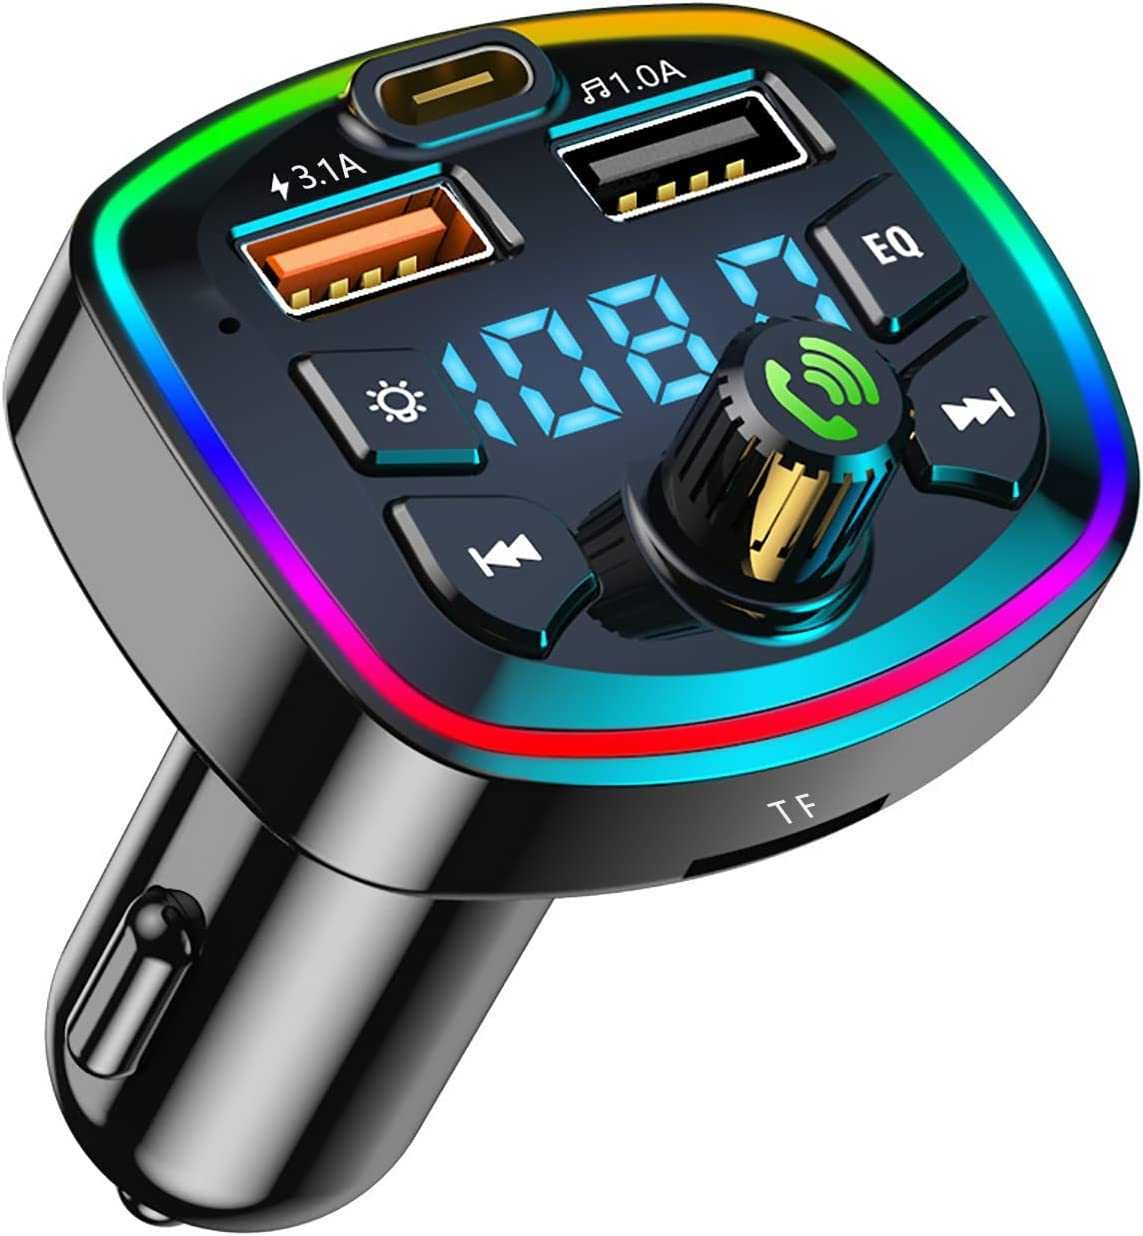 Transmissor FM Bluetooth Carro MP3 portas USB duplas 5 V / 3.1A e 1A